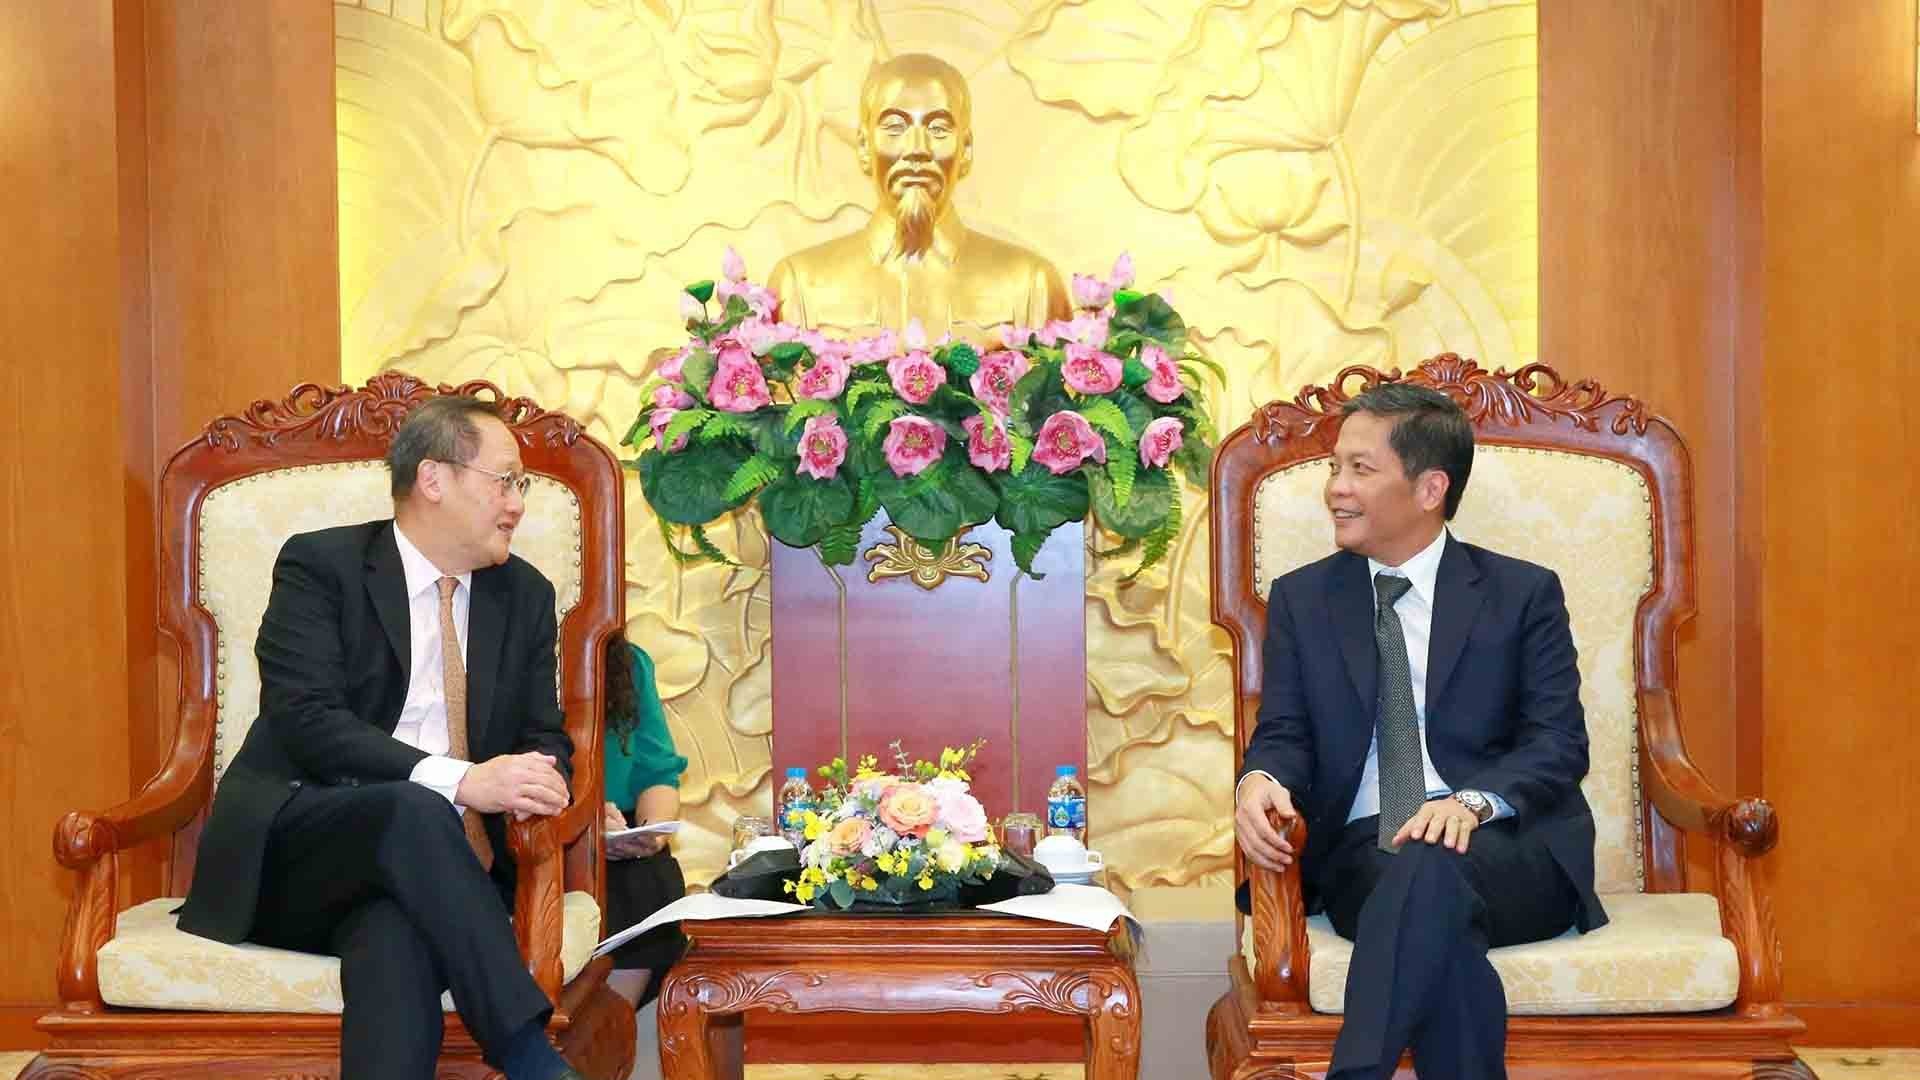 Hợp tác kinh tế là điểm sáng tiêu biểu trong quan hệ Việt Nam-Singapore